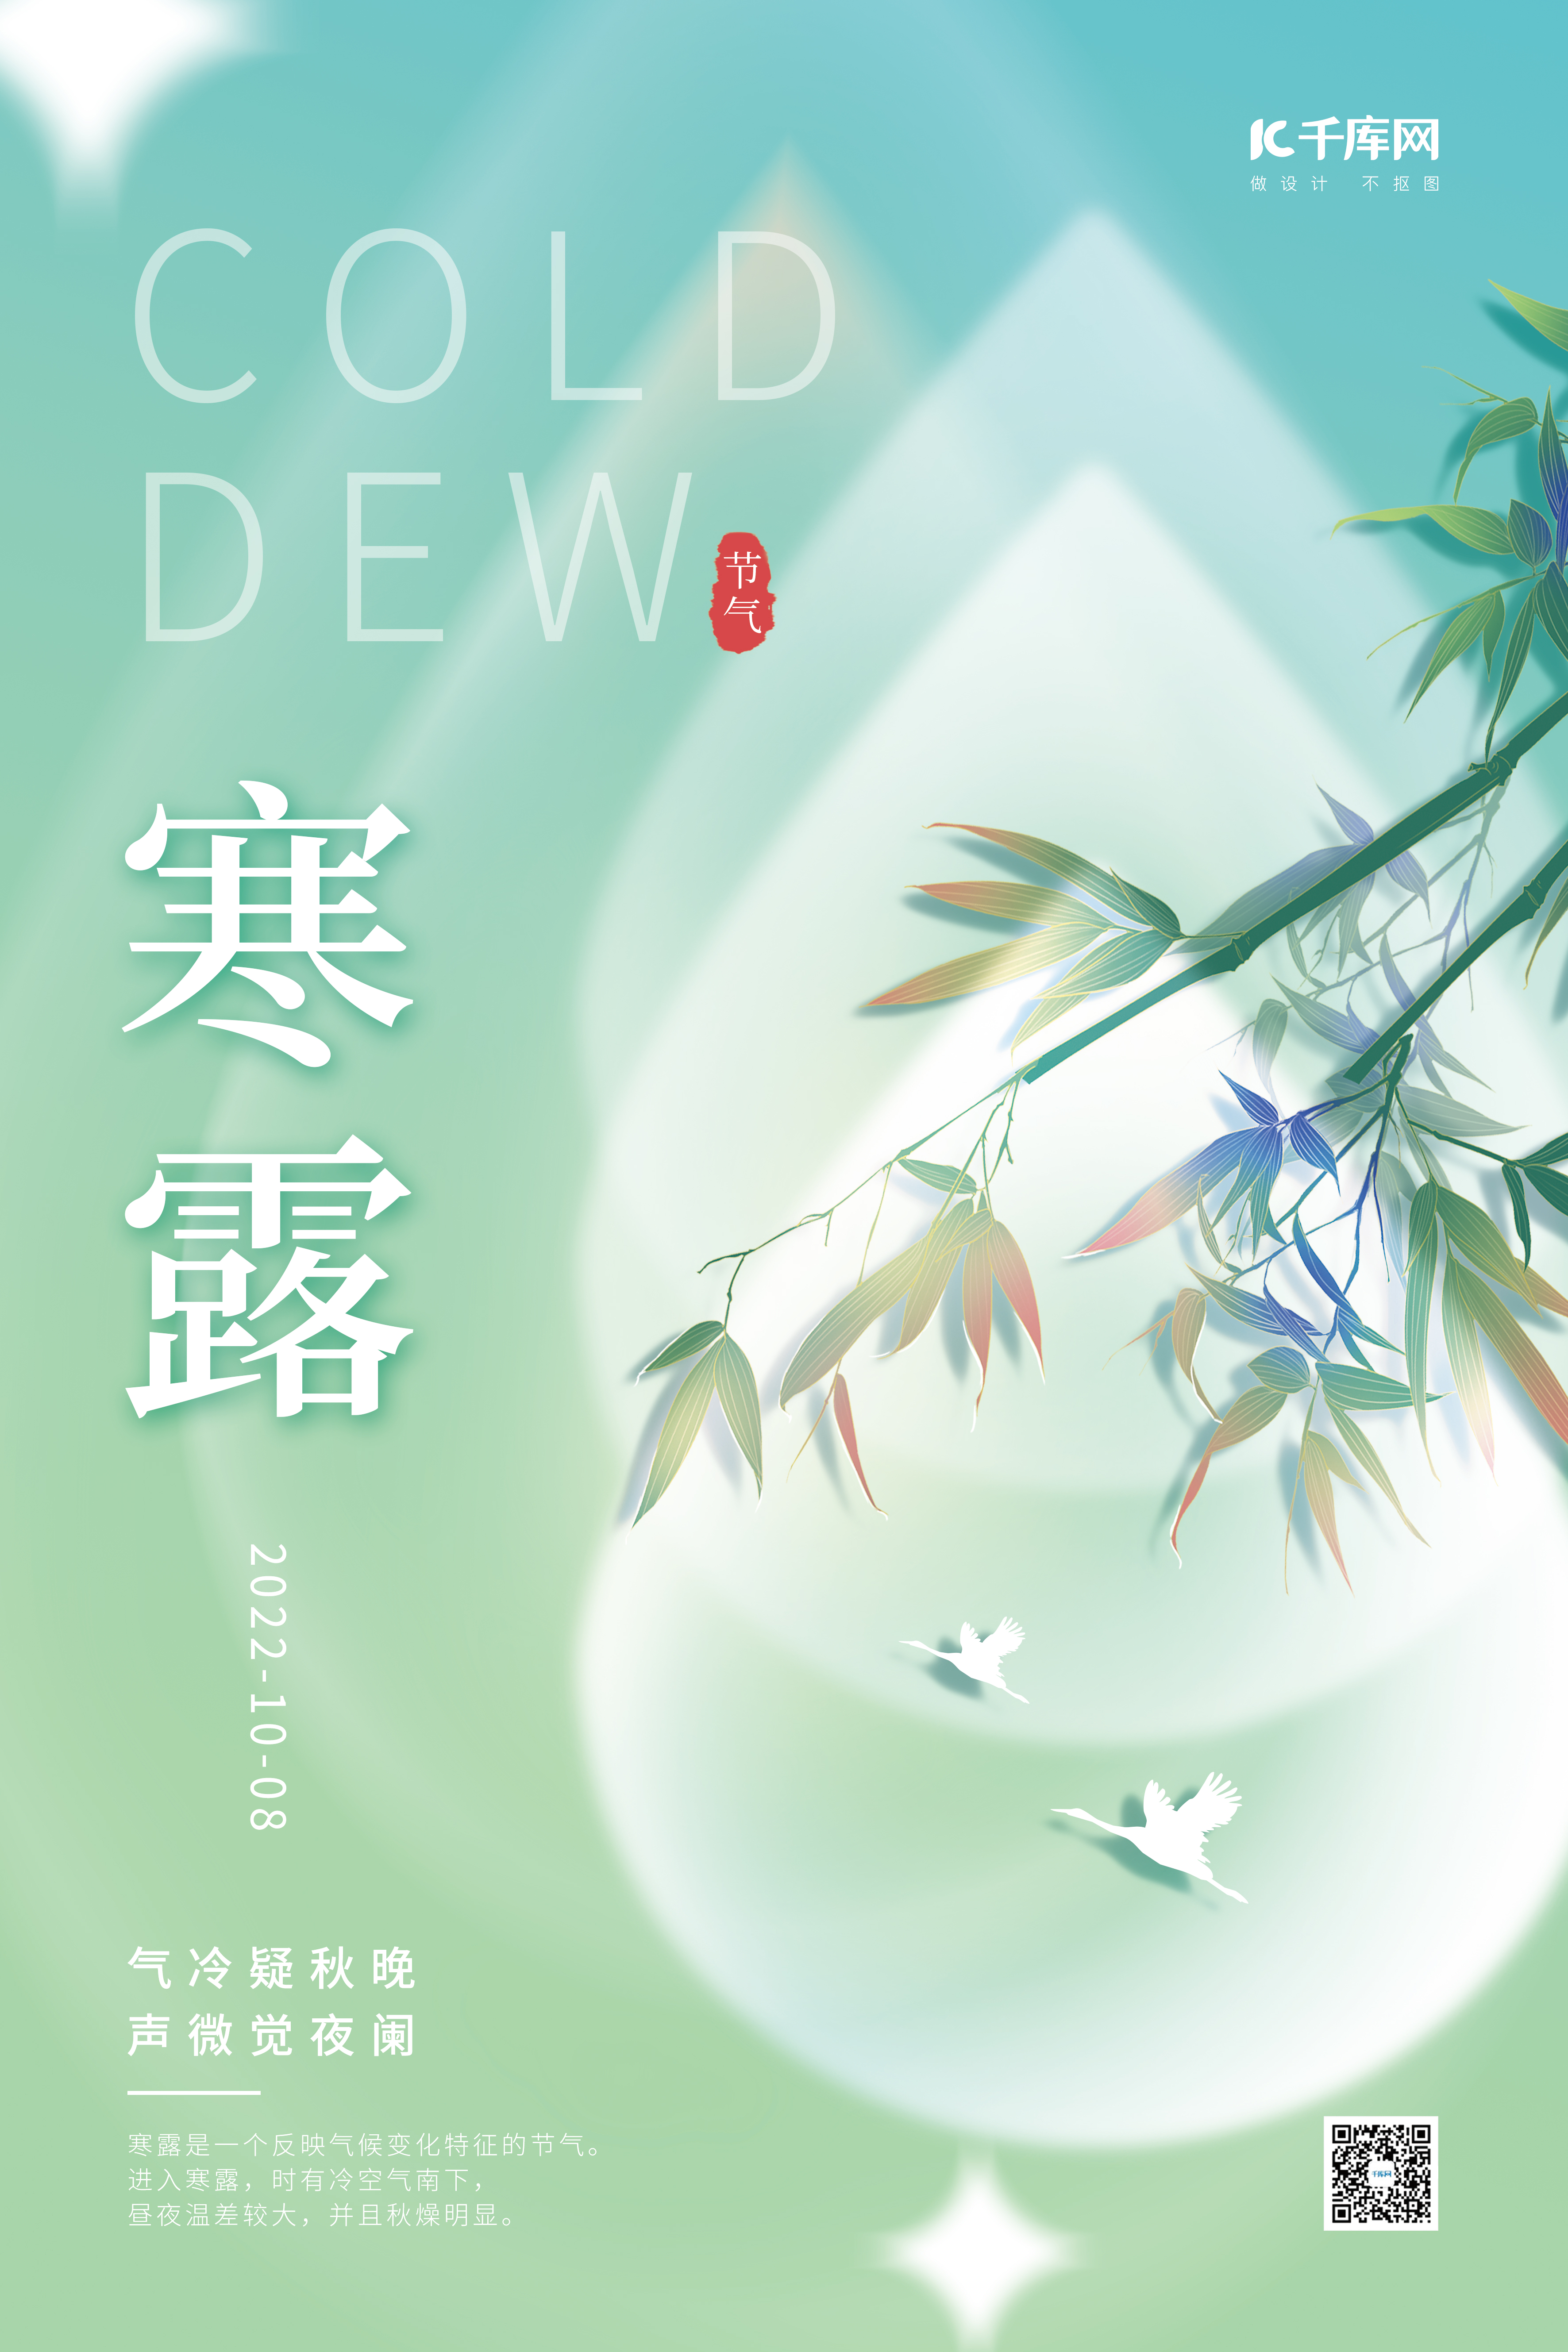 创意传统节气寒露竹子素材淡蓝简约海报图片